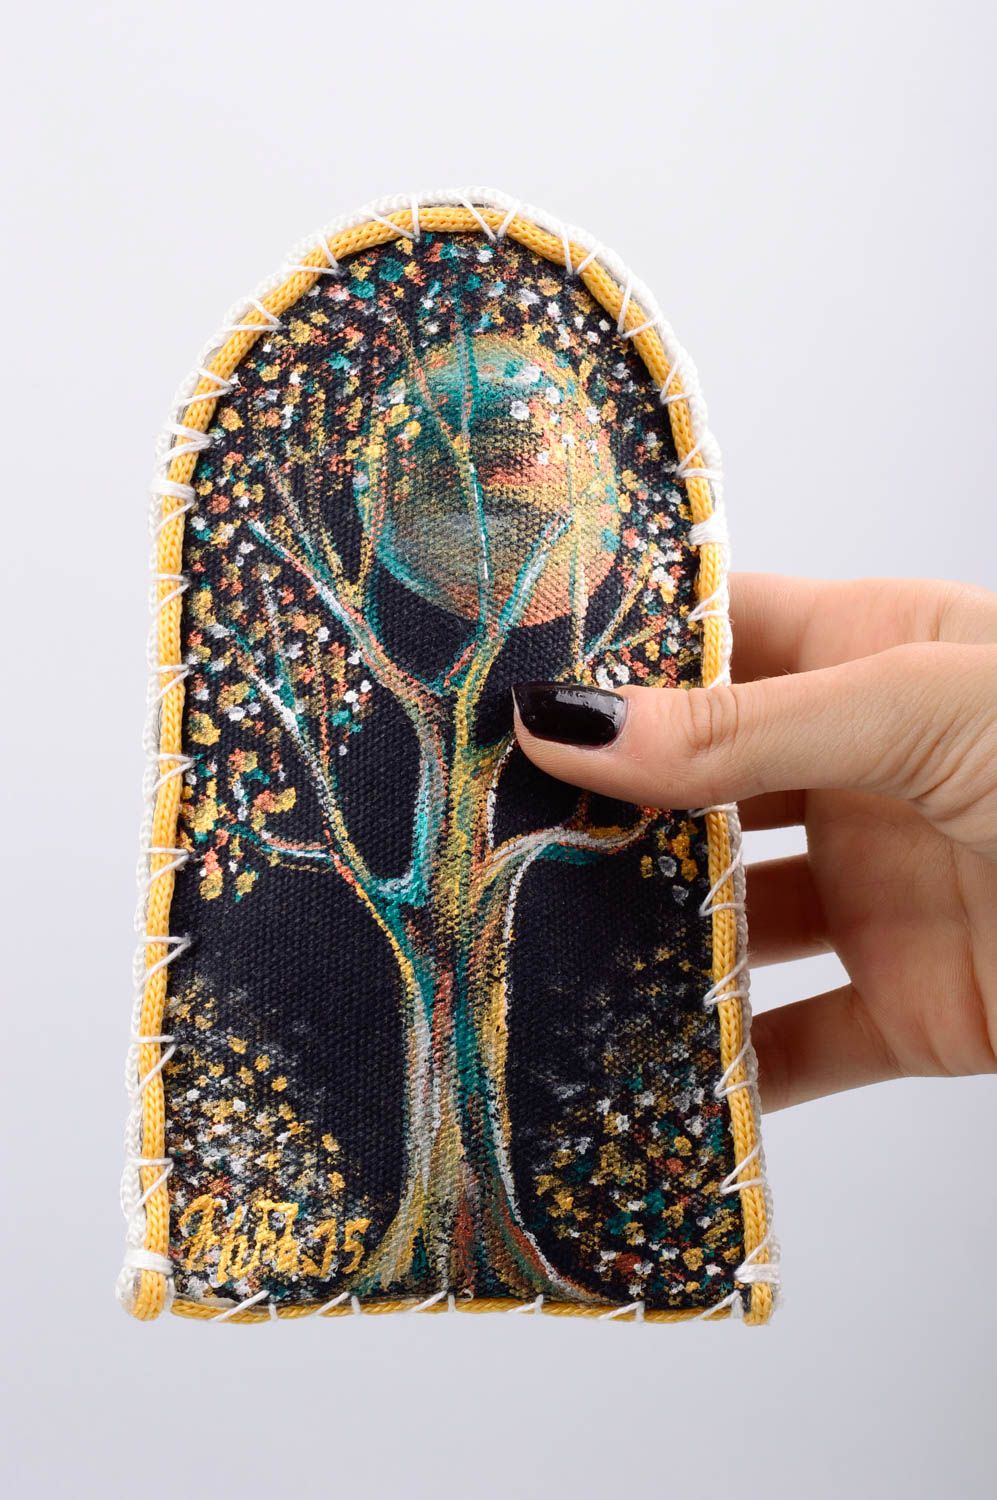 Textil Brillenetui mit Baum bemalt schön handmade Accessoire aus Zeltbahn  foto 3